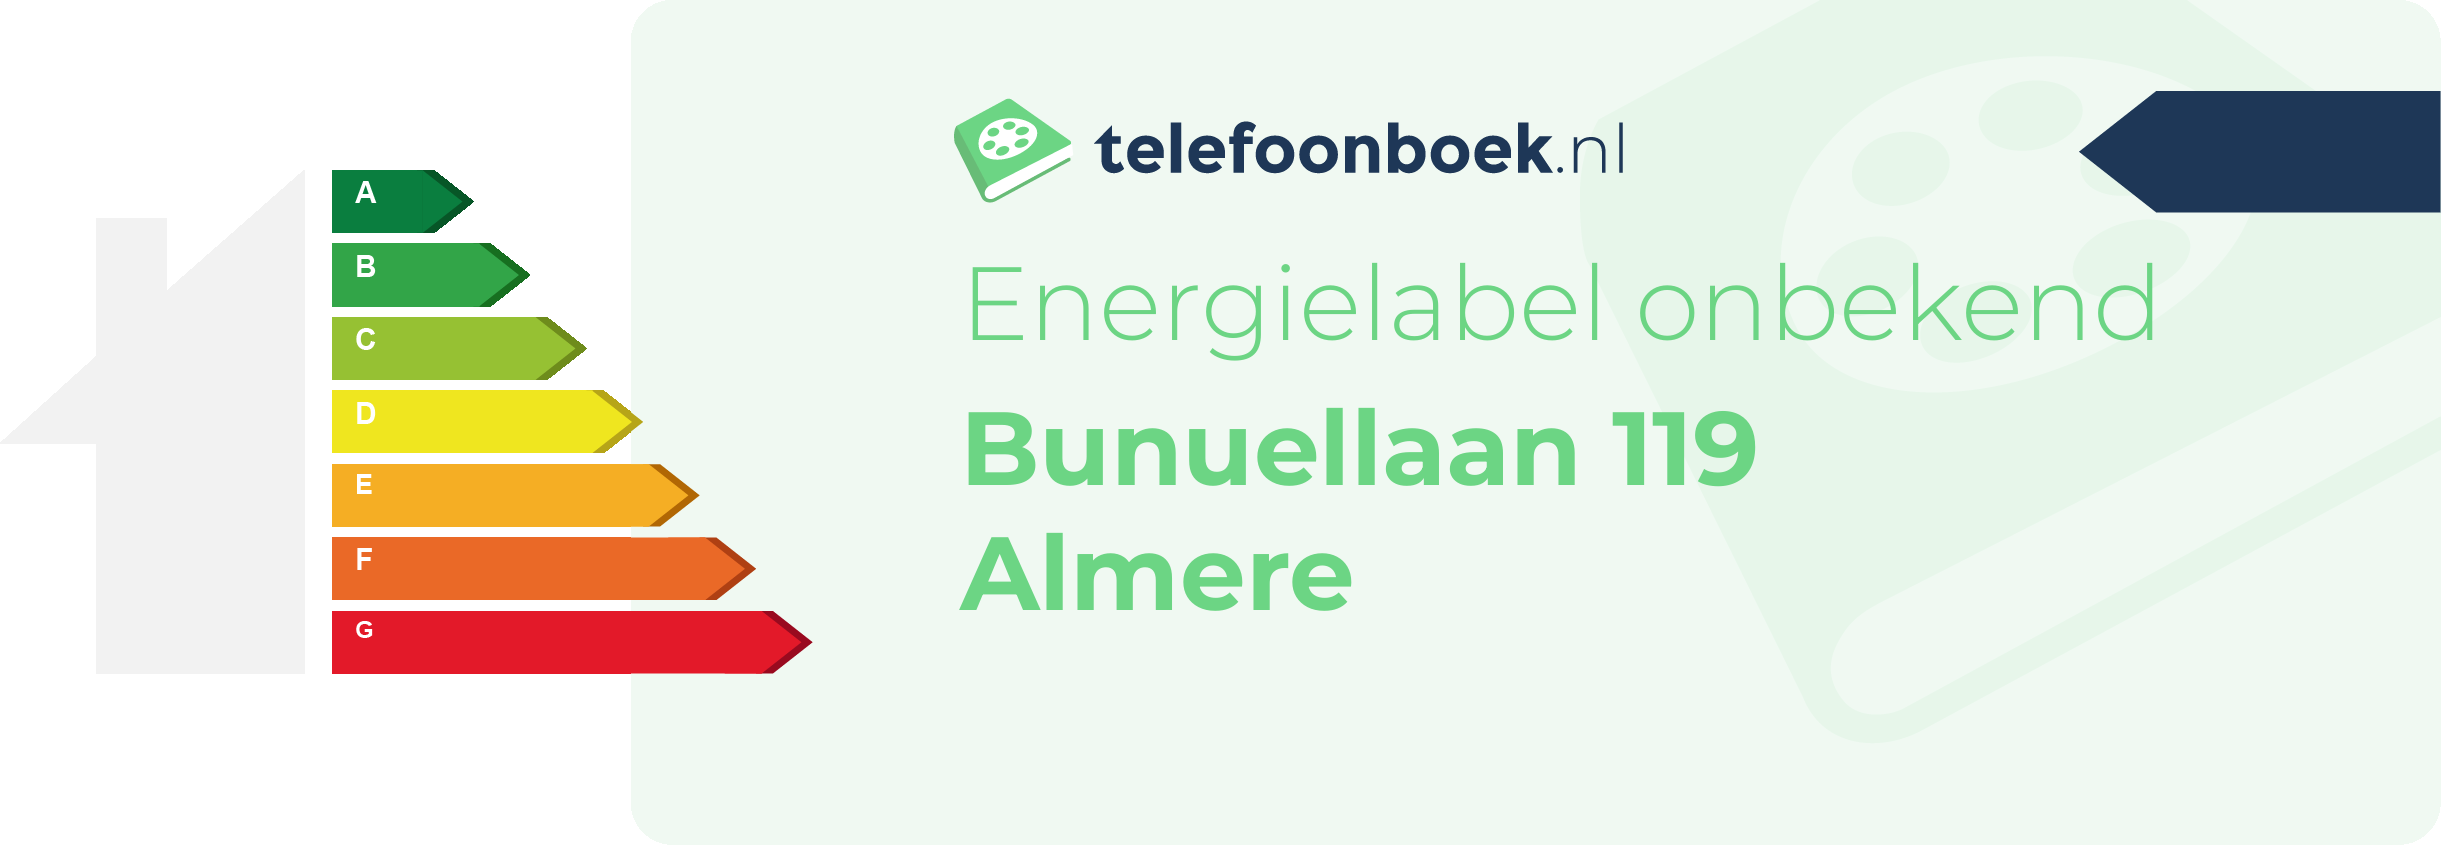 Energielabel Bunuellaan 119 Almere